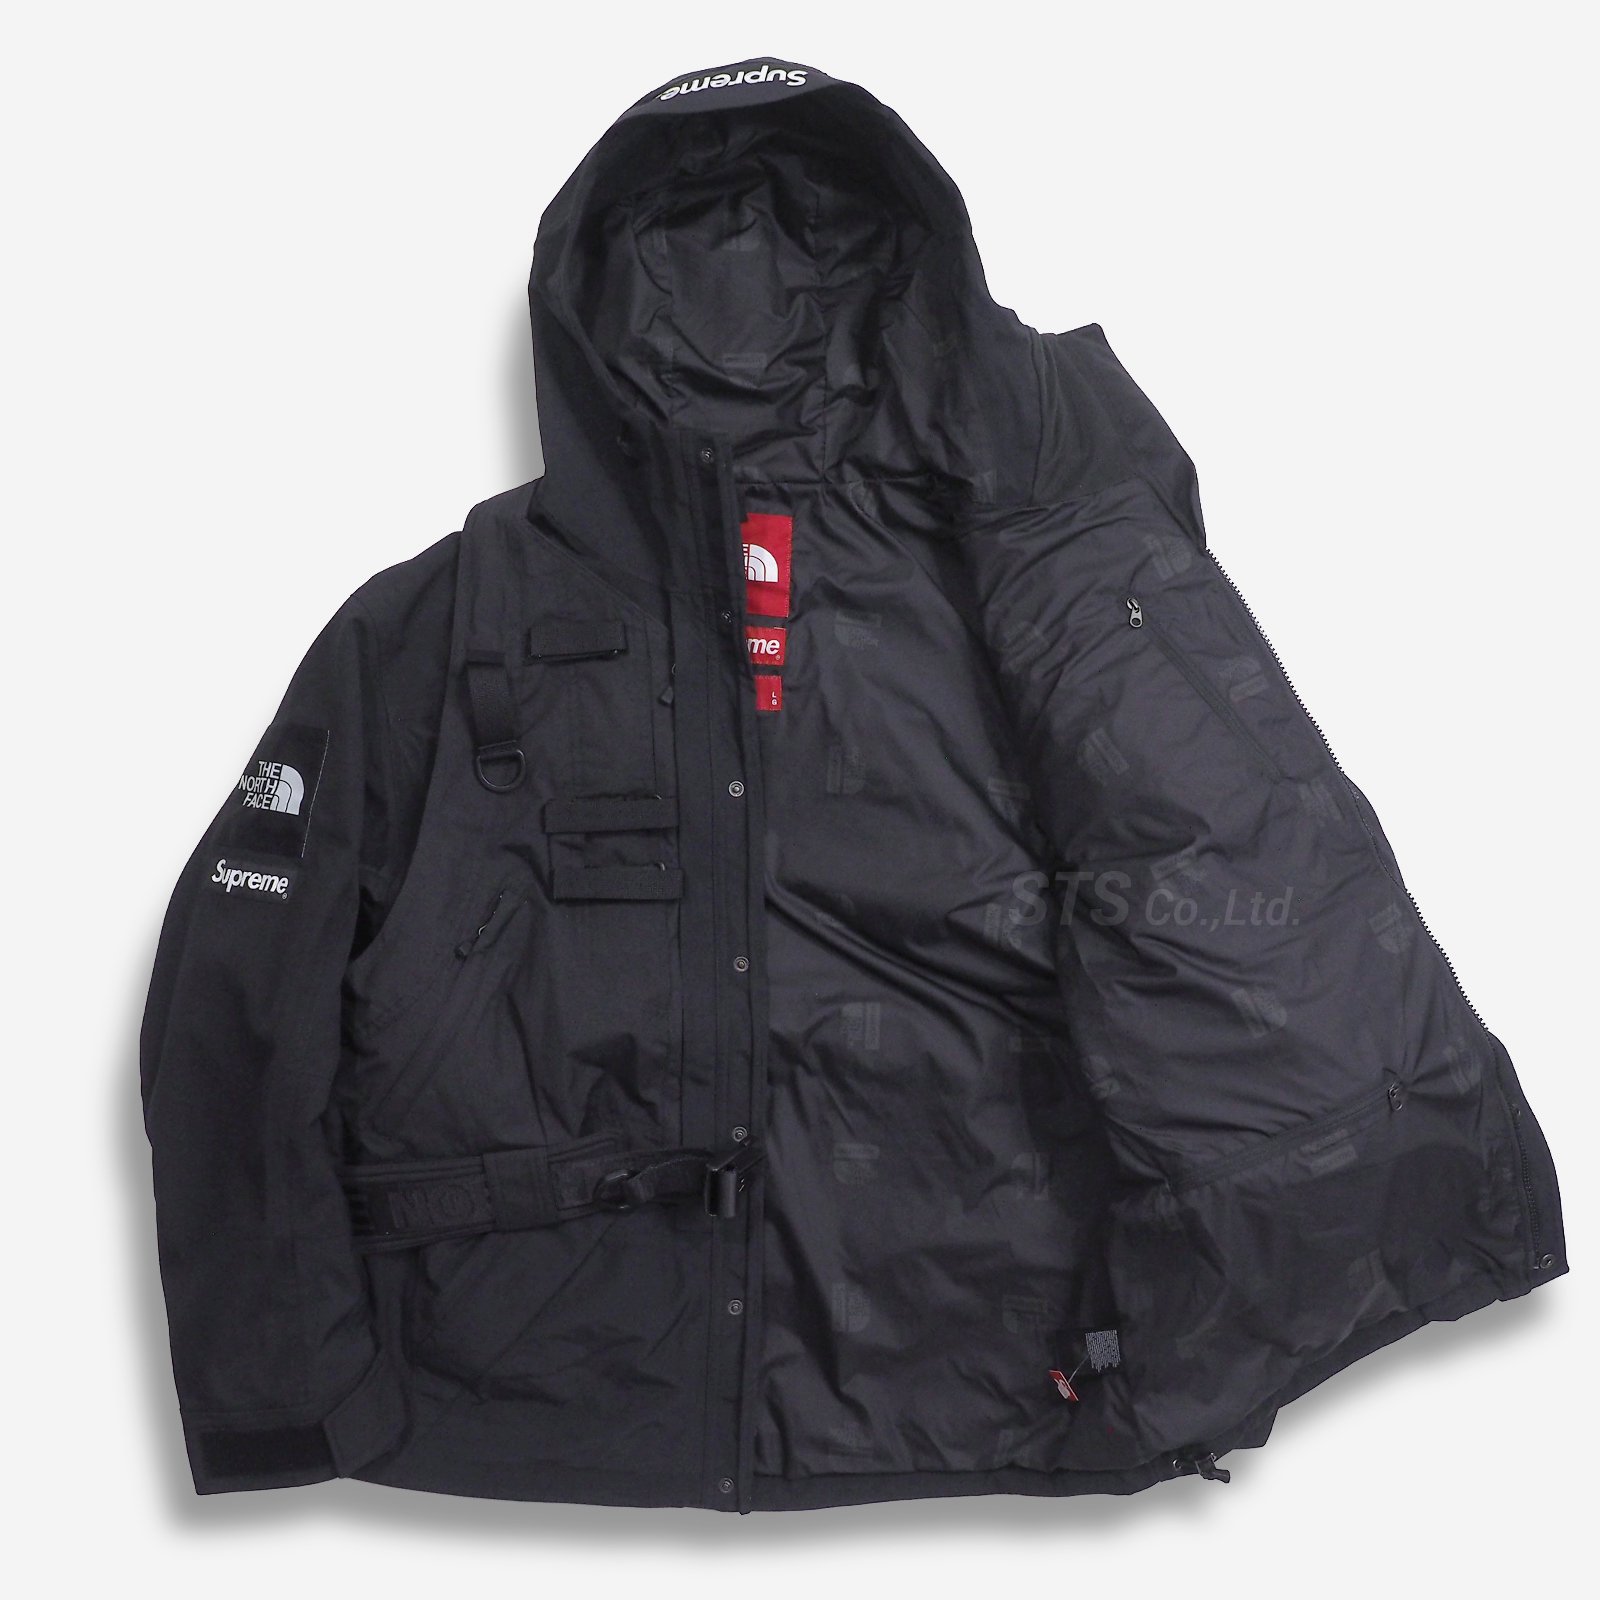 Supreme/The North Face RTG Jacket + Vest - UG.SHAFT